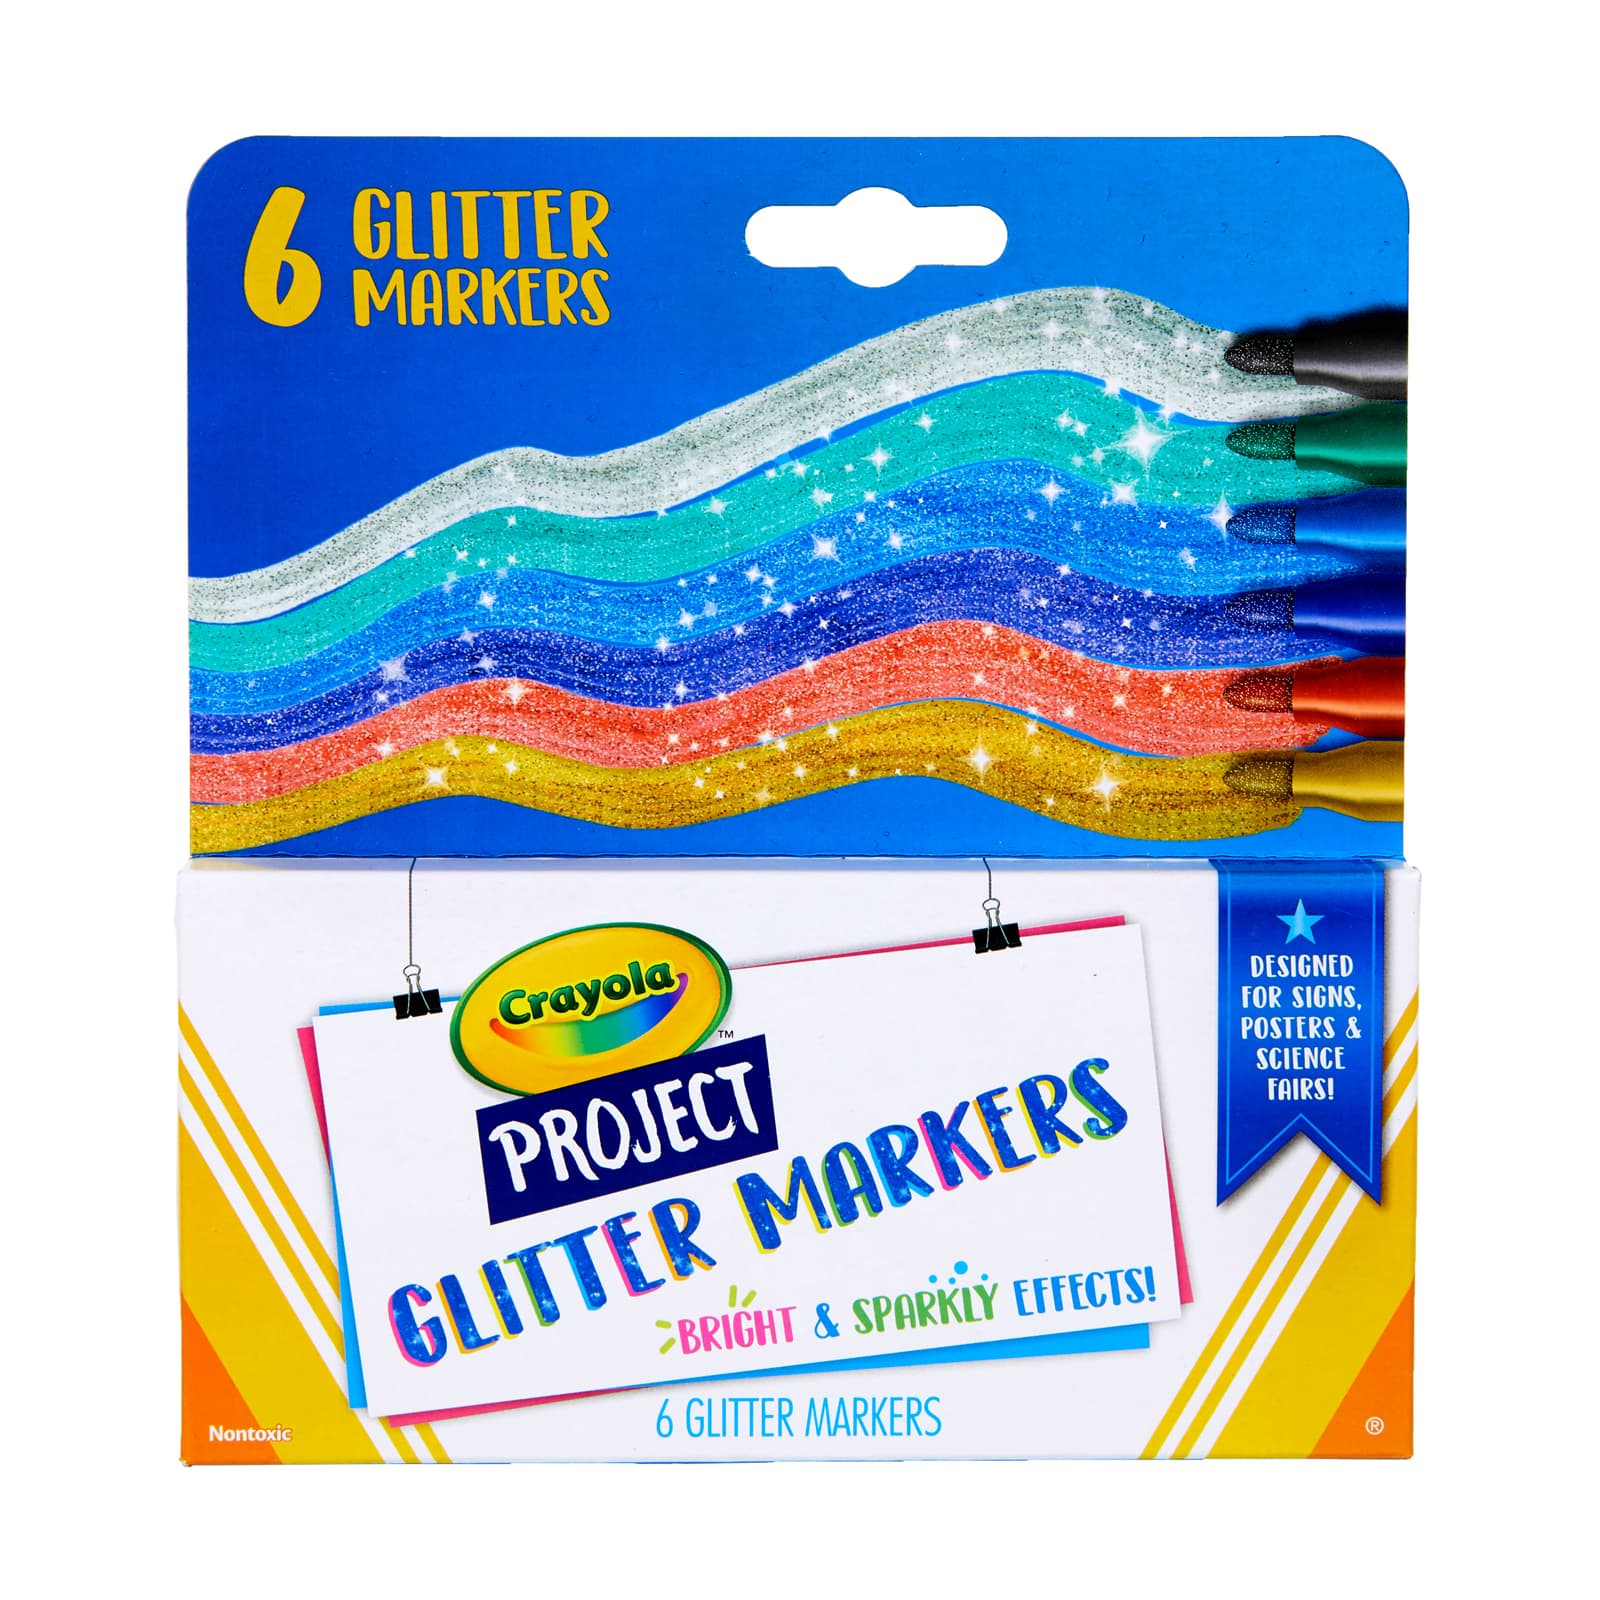 Marker Maker, DIY Craft Kit for Kids, Crayola.com